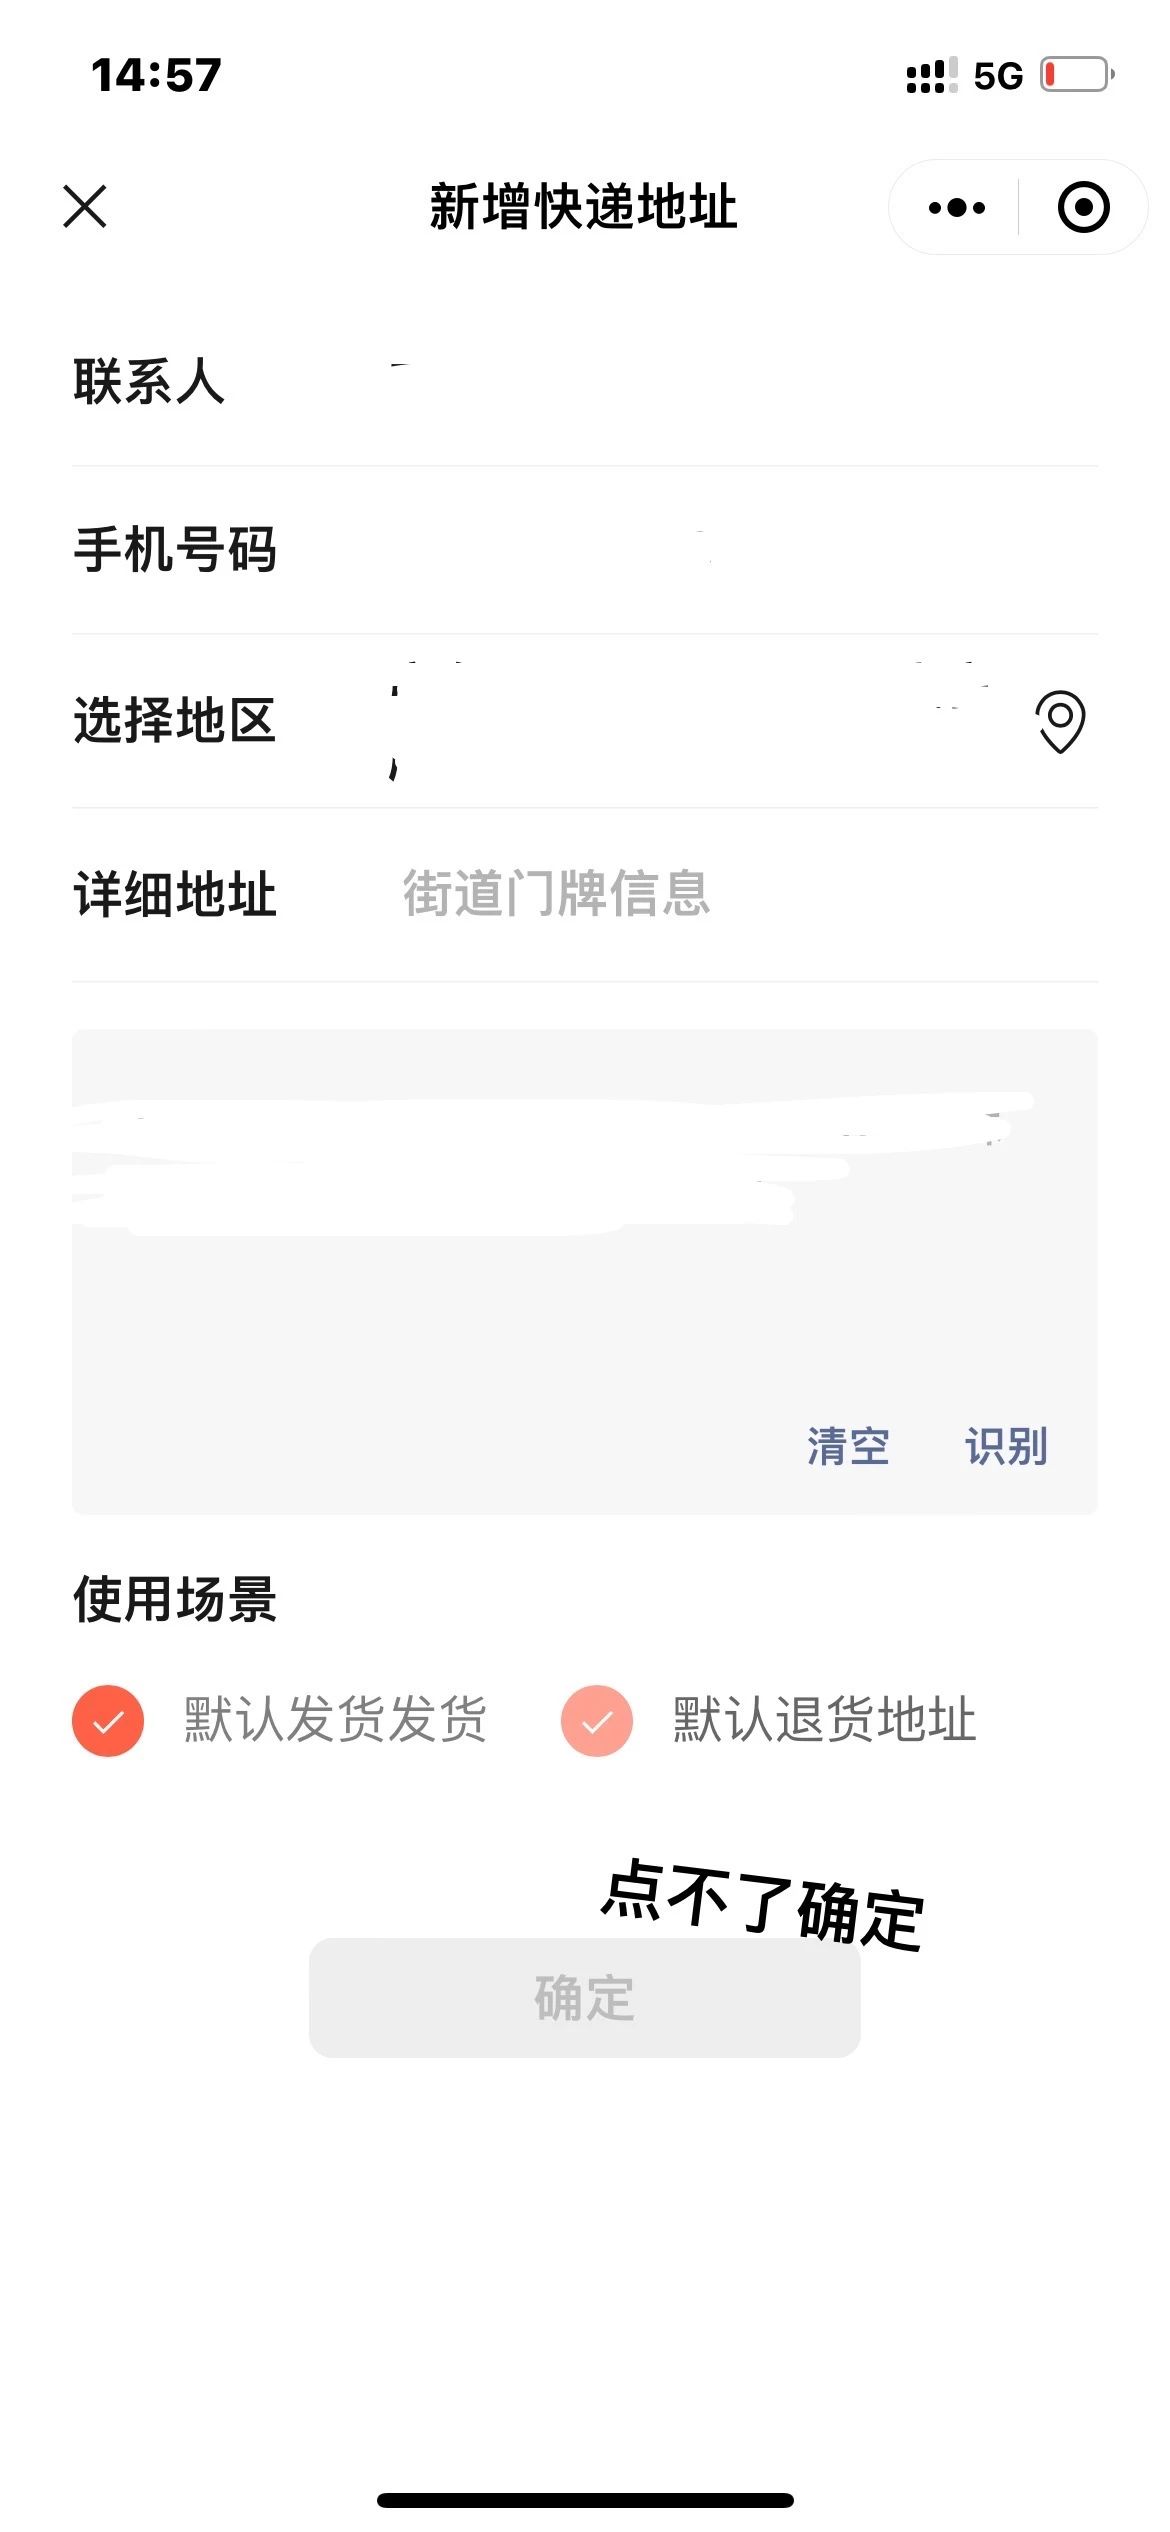 发表帖子 上传图片要上传两次才行 为什么呀—keyshot中文网